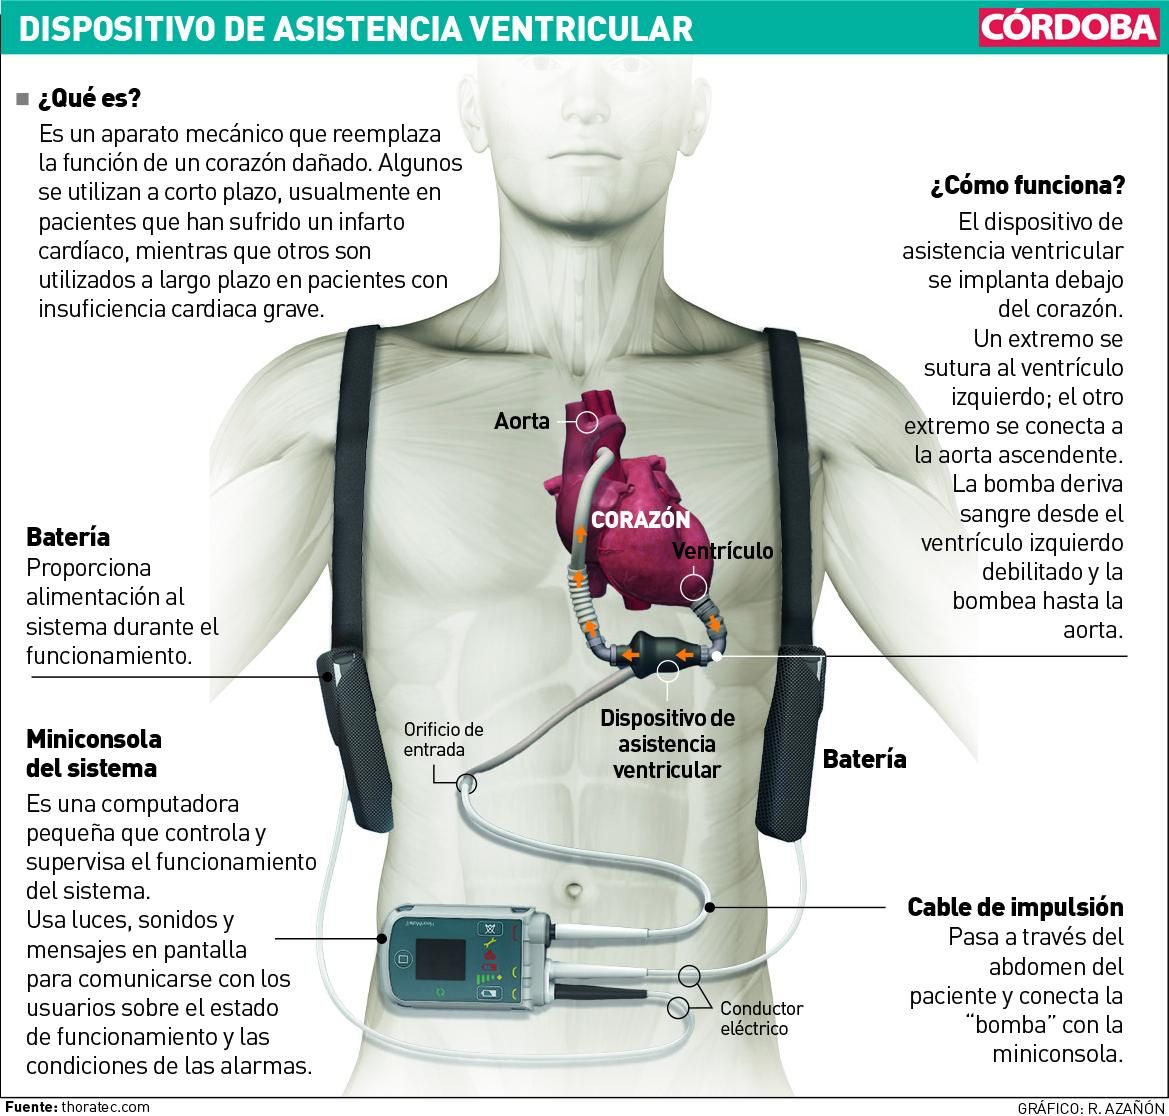 Dispositivo de asistencia ventricular.